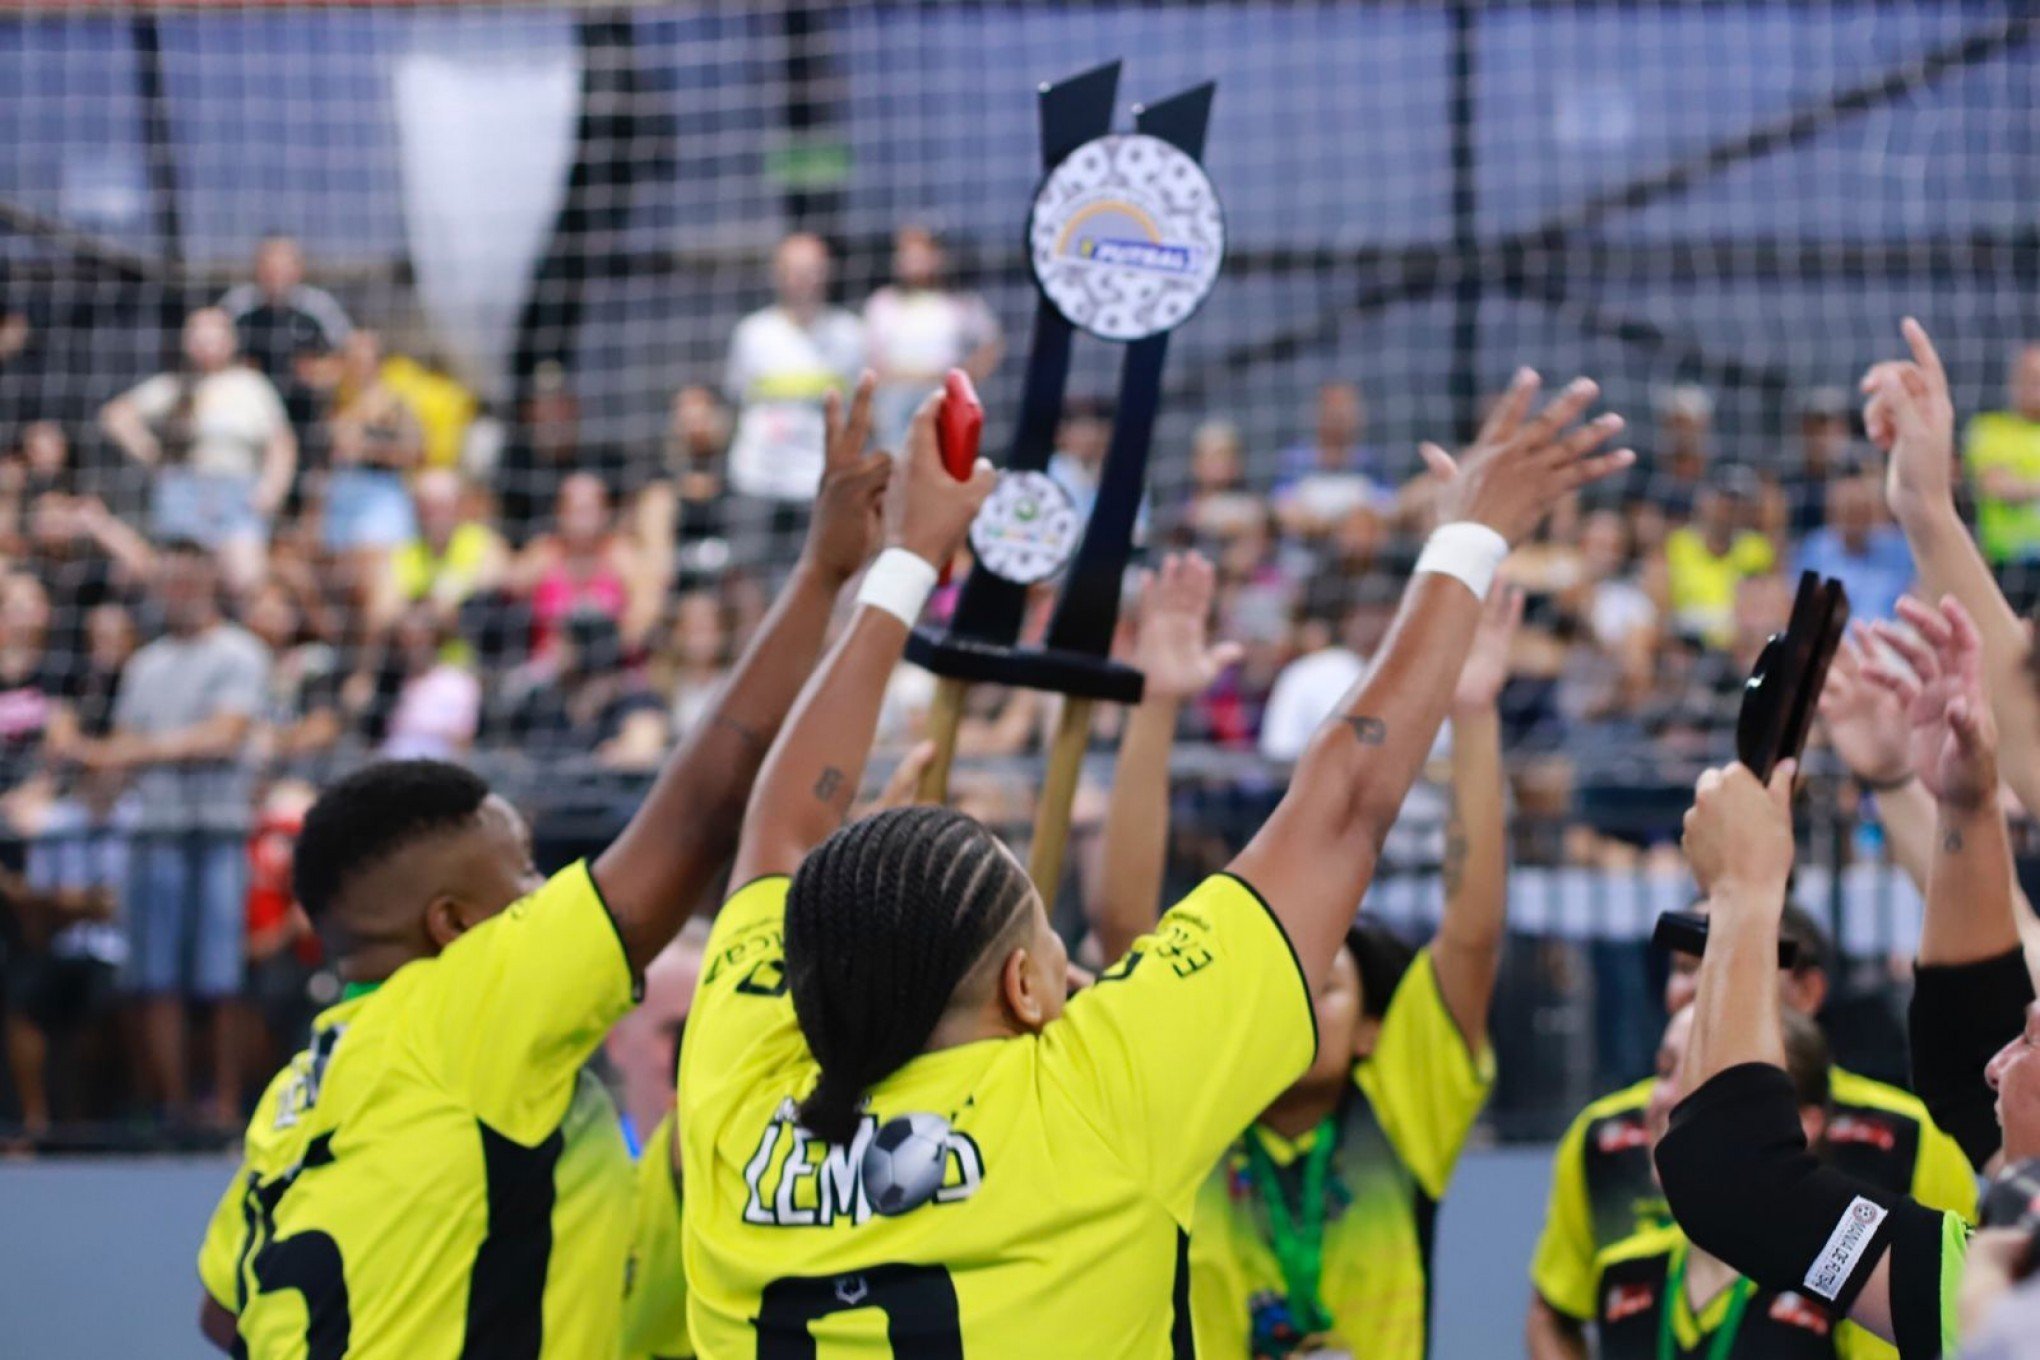 Amigas do Feijão e Multi F.C. são os campeões da Supercopa Kurashiki de Futsal